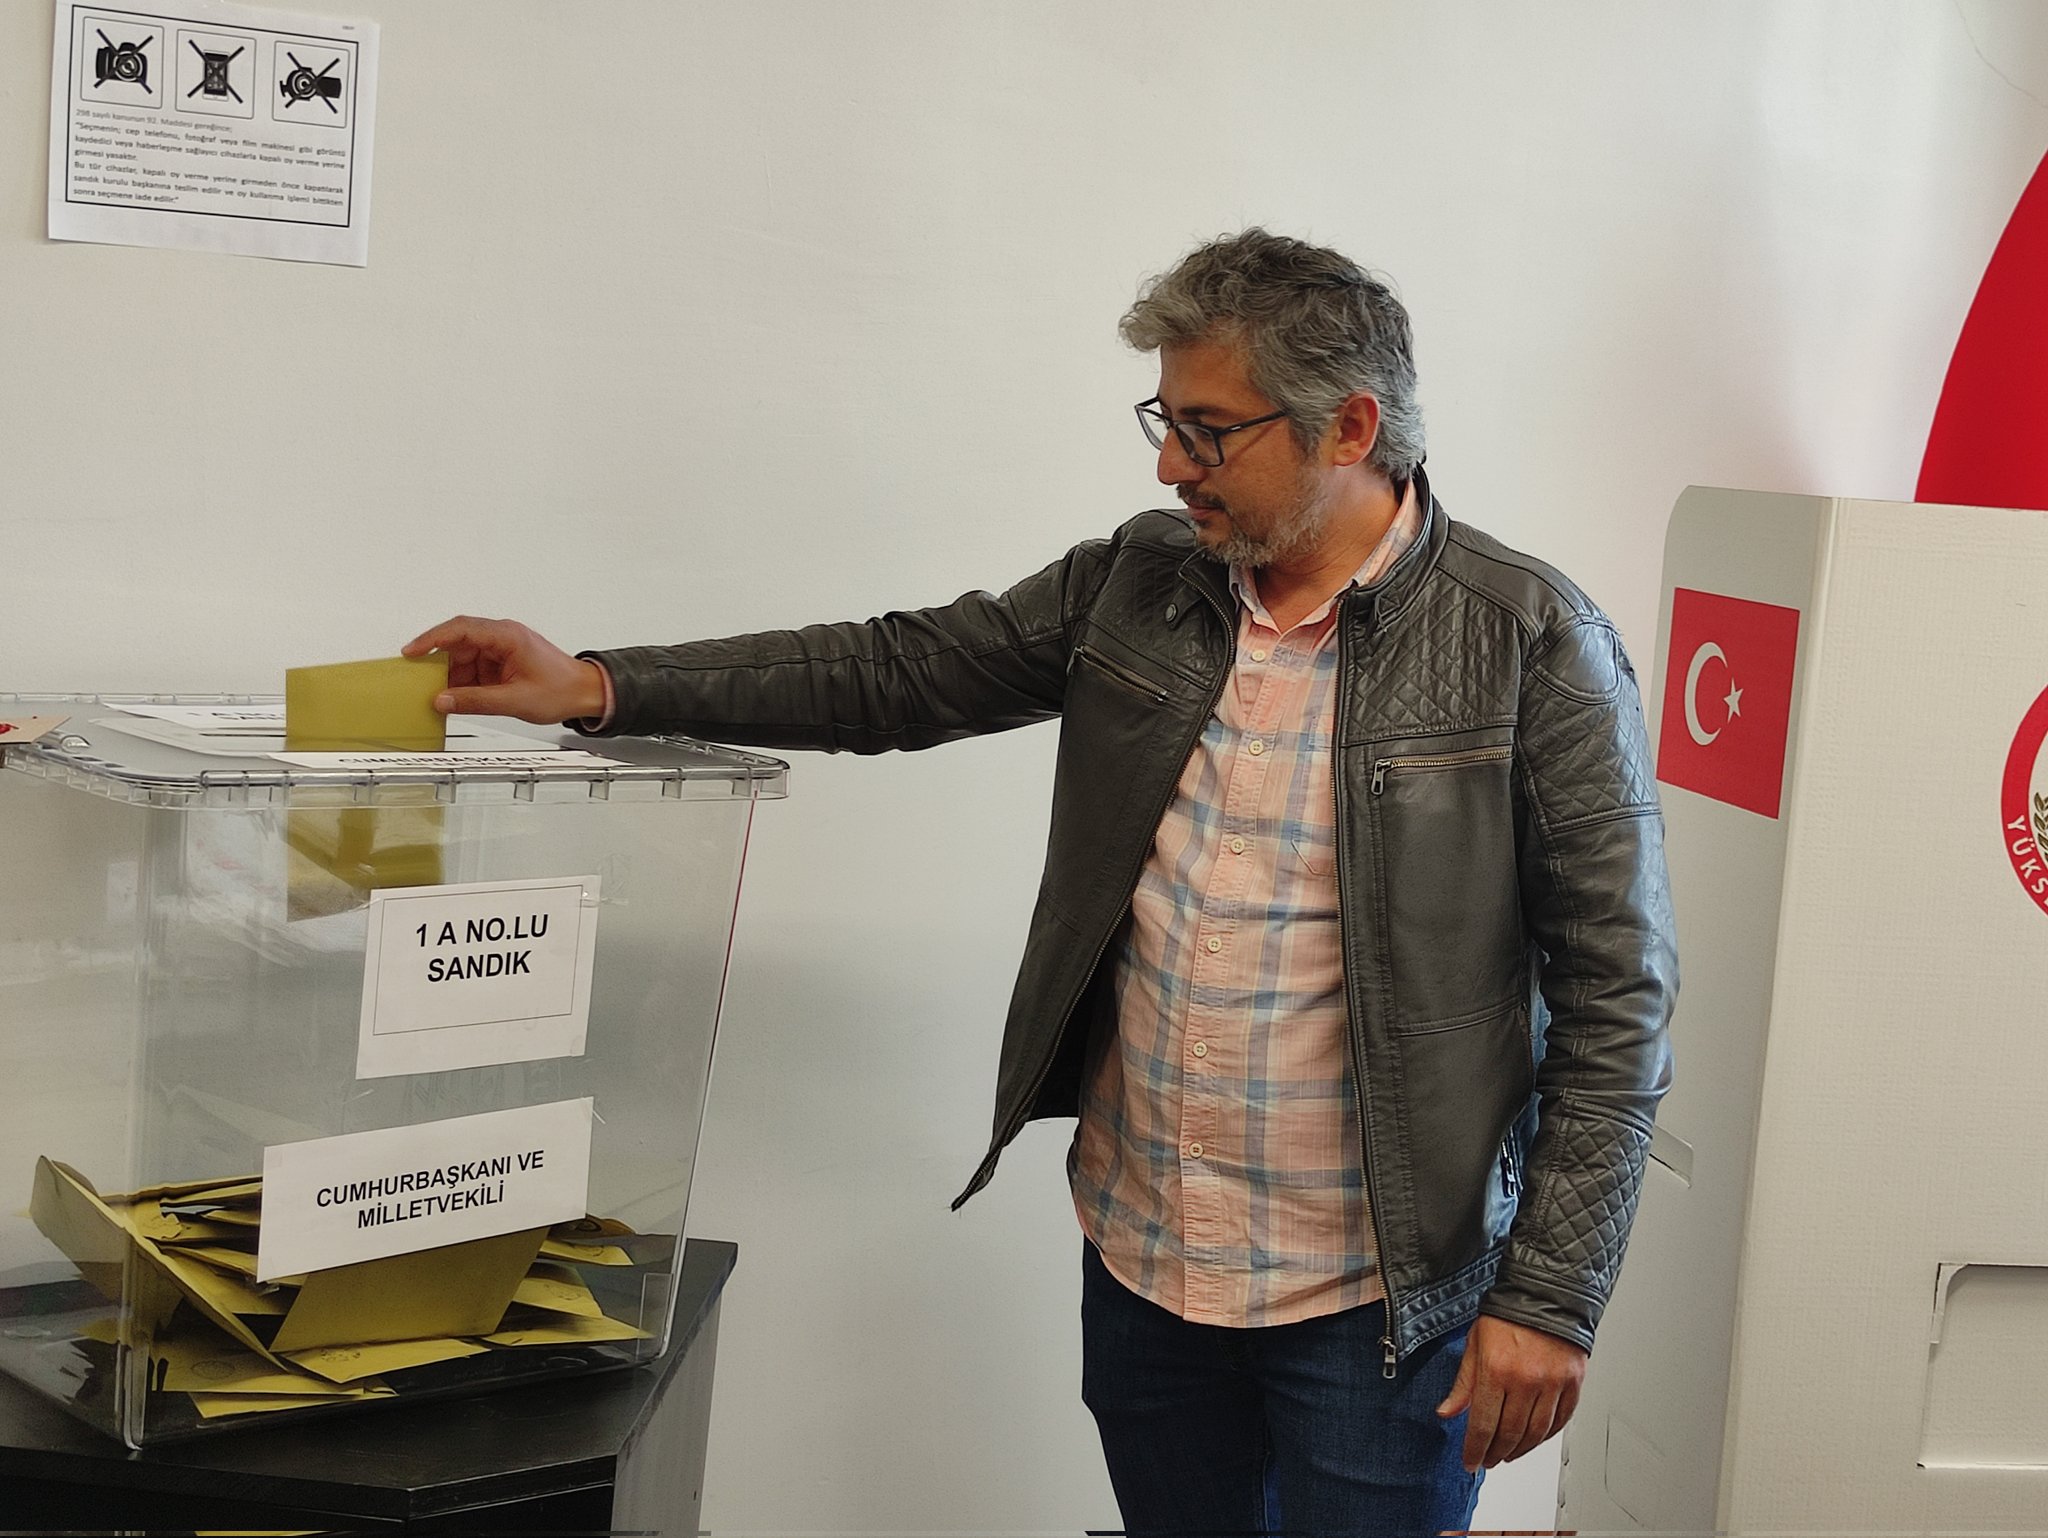 В Минске можно проголосовать за нового президента Турции